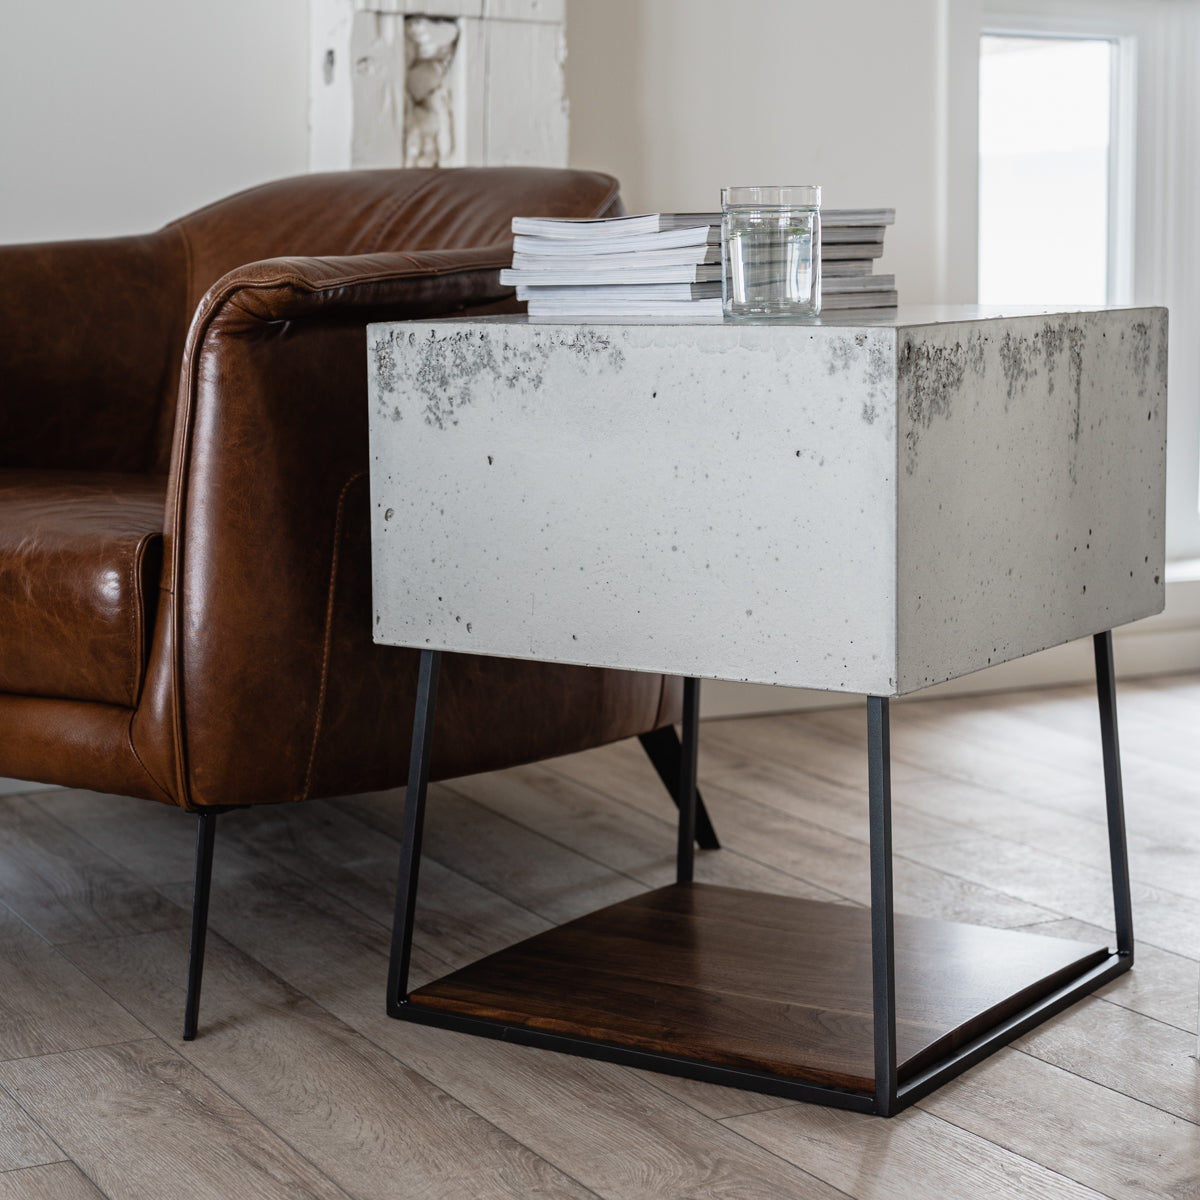 Tröge Concrete Console Table - Studio50 Living